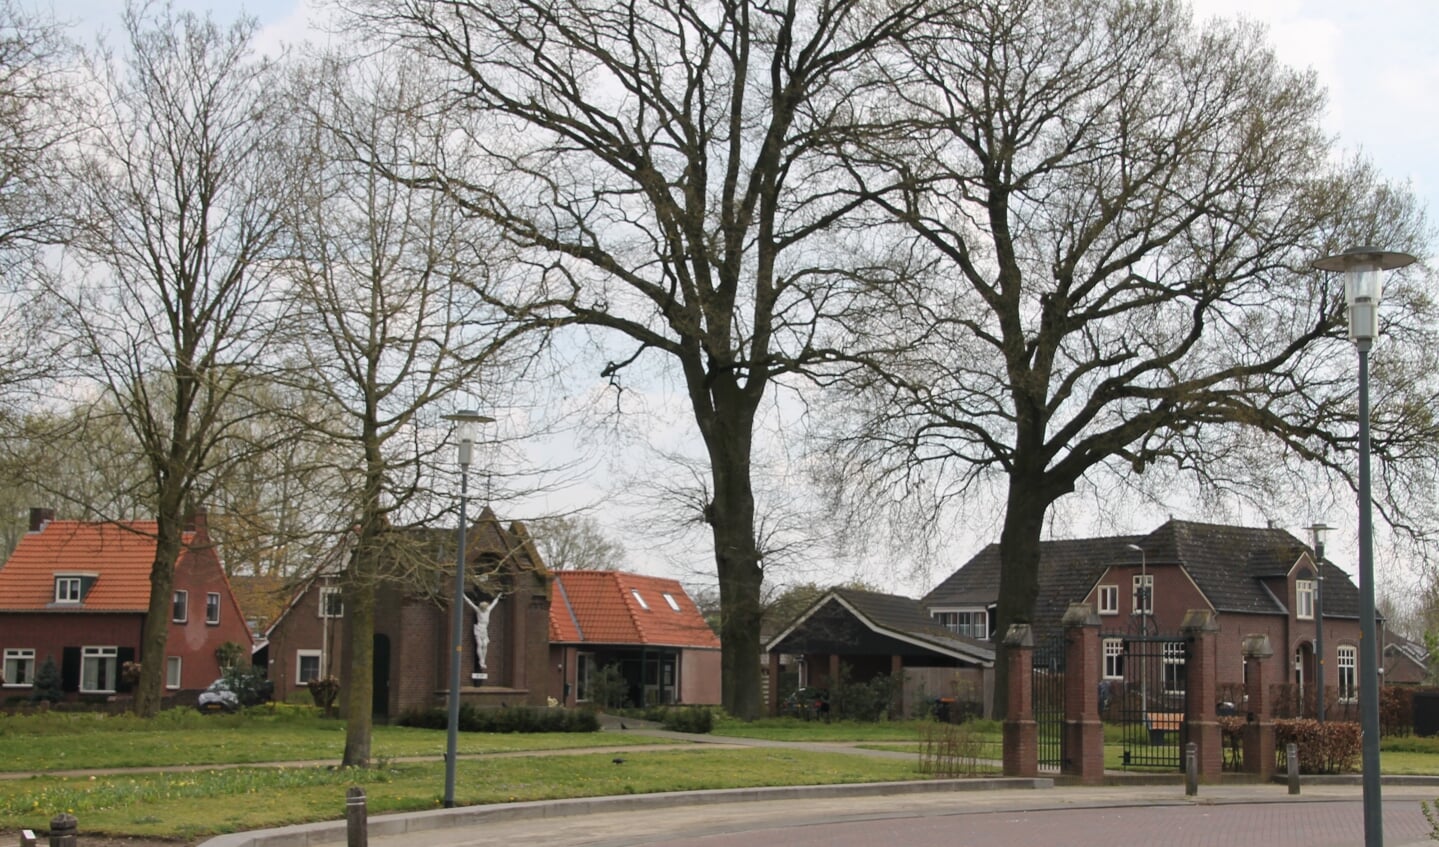 Grote eiken aan de Pastoor Zanderinkstraat in Zieuwent. Foto: Annekée Cuppers